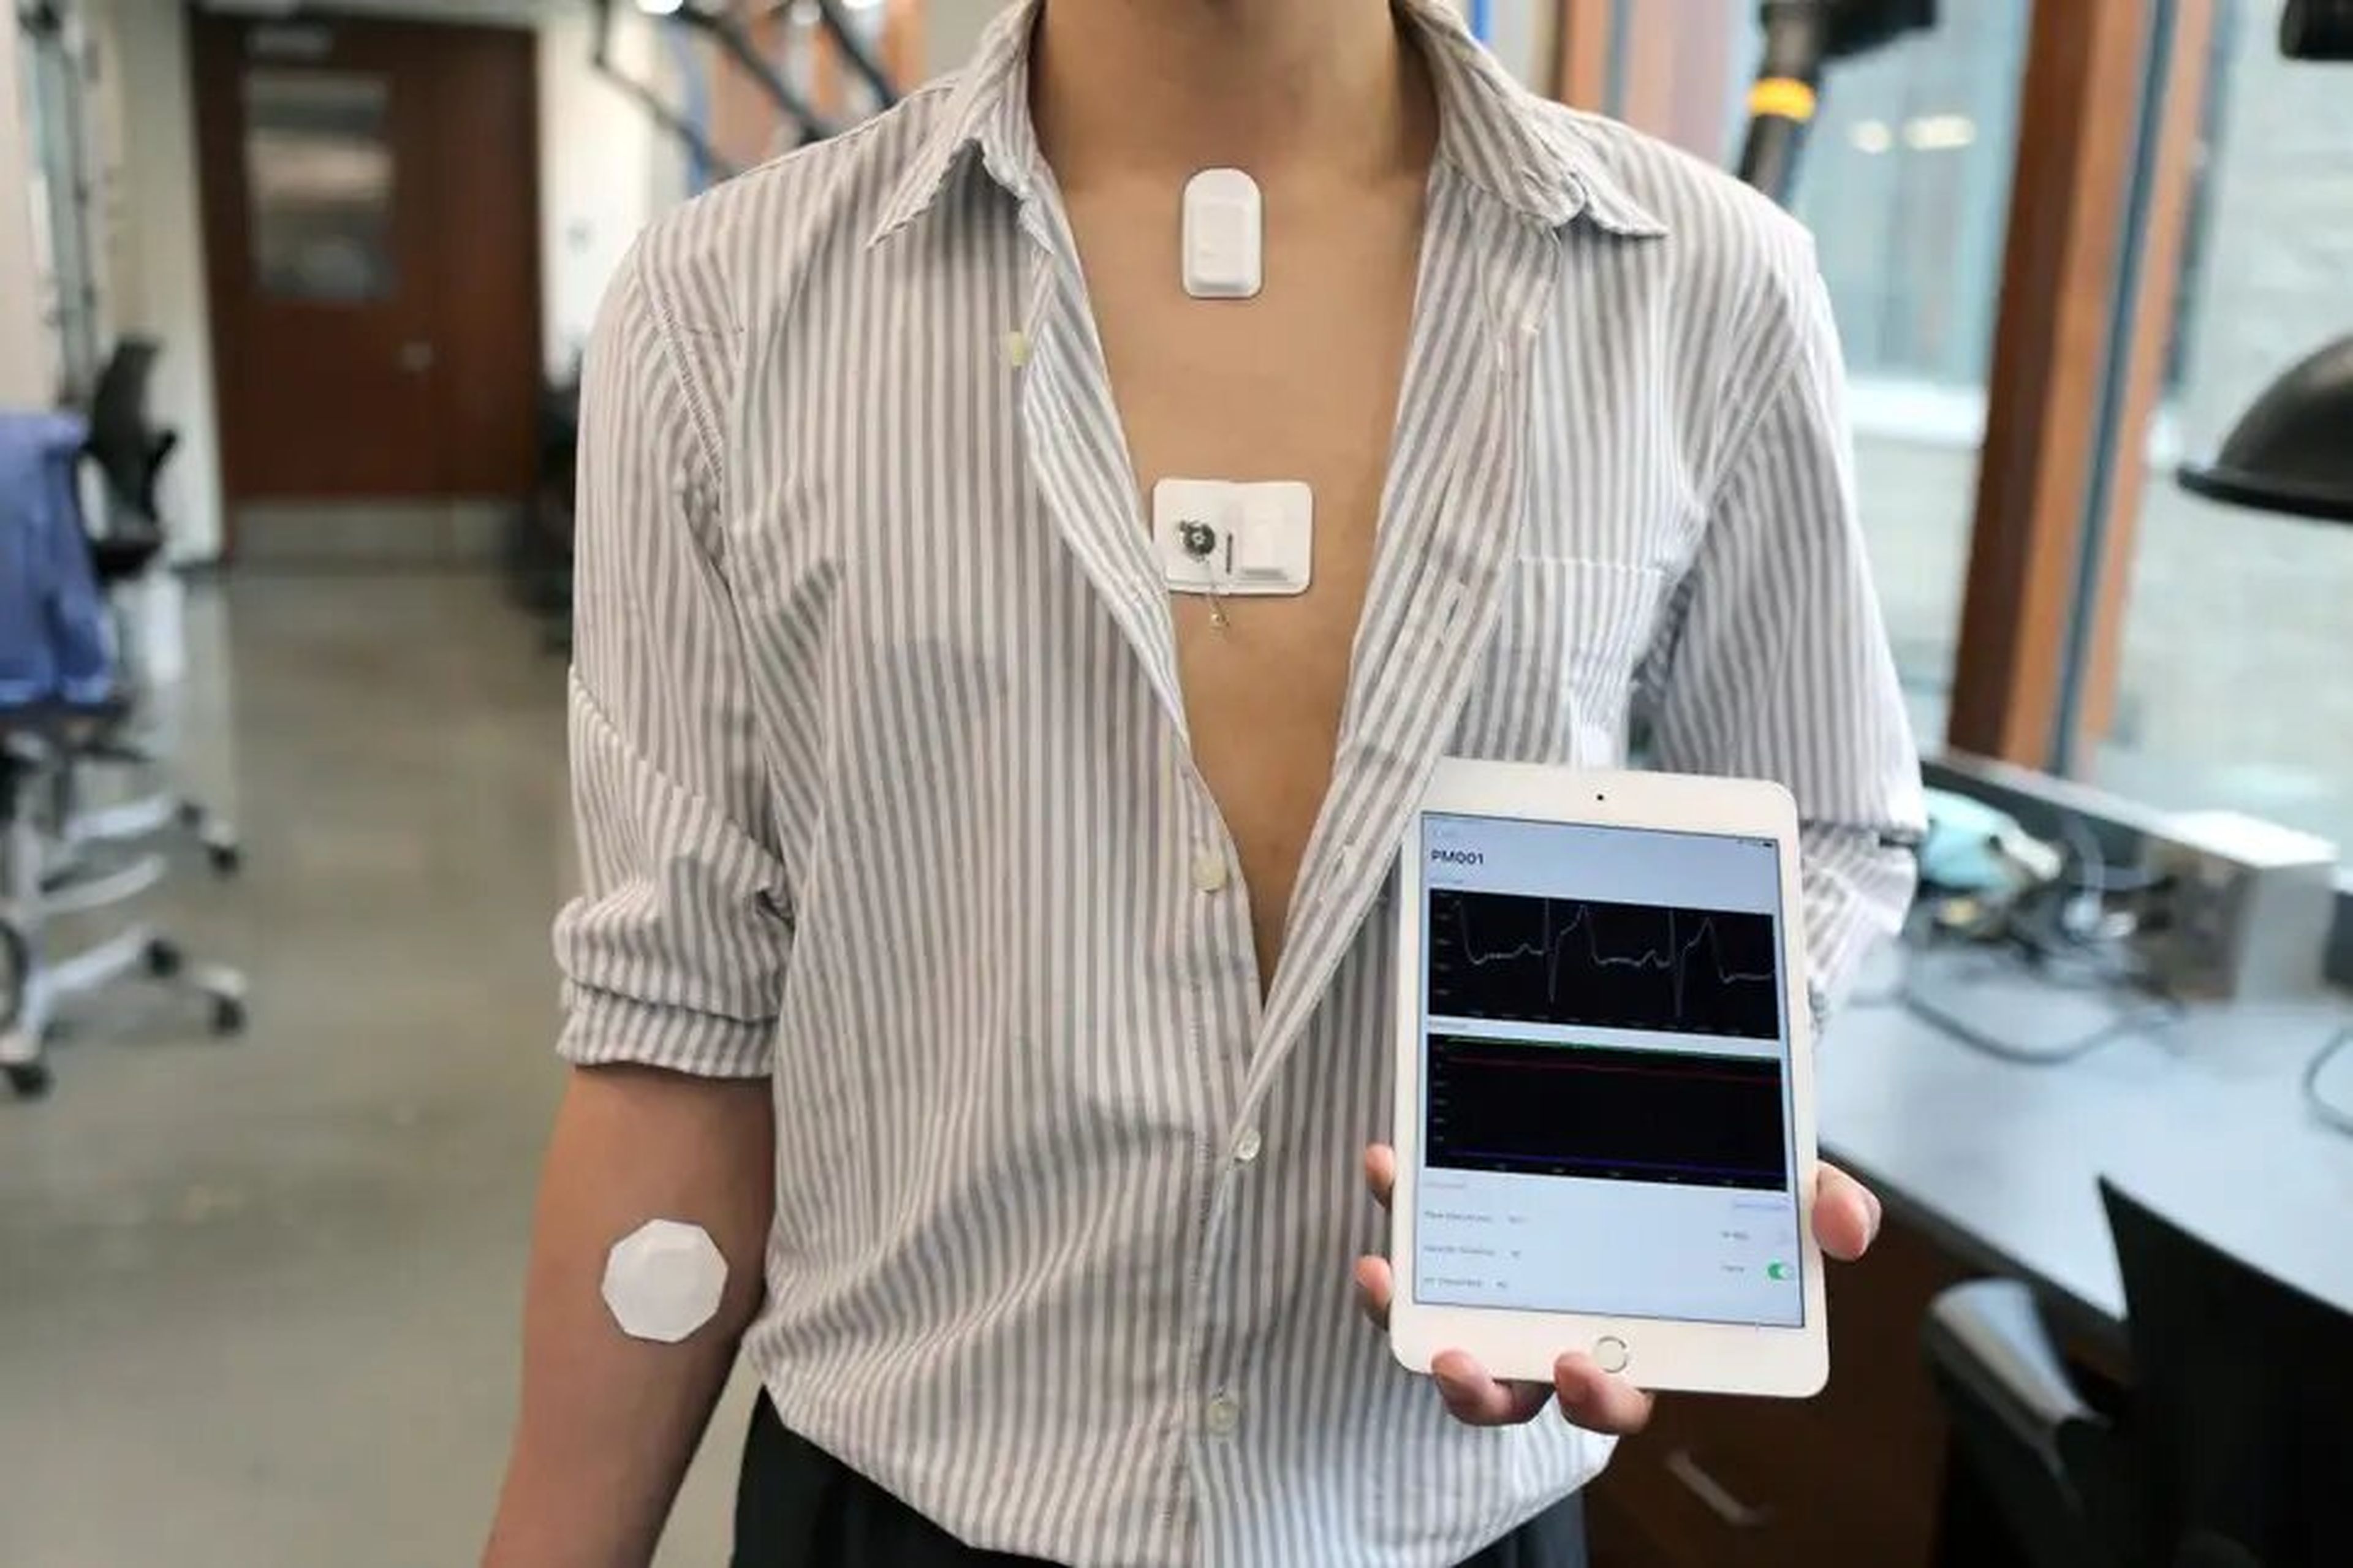 Un voluntario demuestra los sensores inalámbricos y la unidad de control del sistema del marcapasos, que también puede enviar los datos a una app.